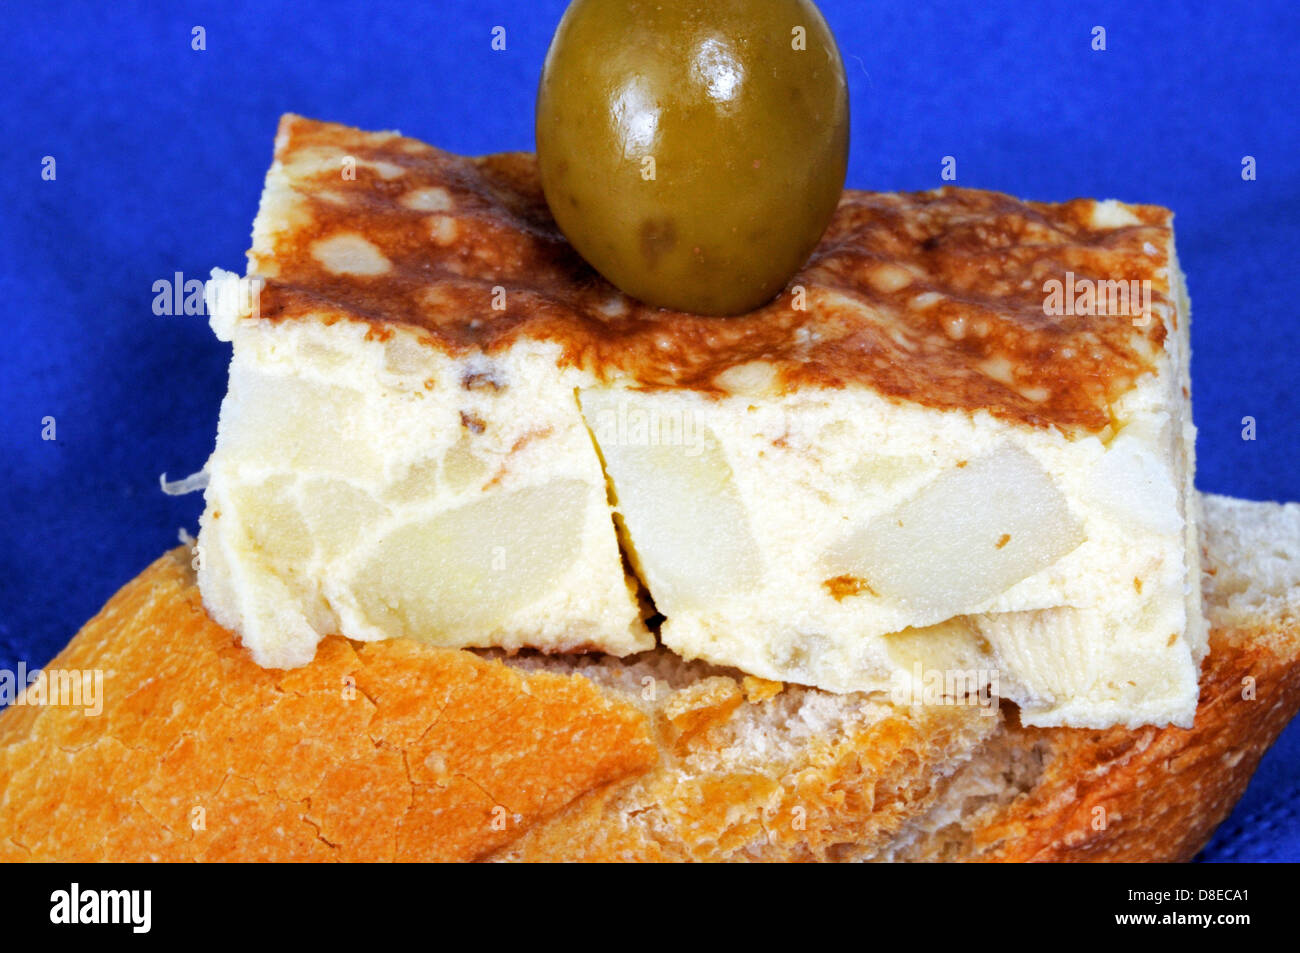 Spanische Tortilla Tapa garniert mit grünen Oliven und serviert auf knusprigem Brot, Andalusien, Spanien, Westeuropa. Stockfoto